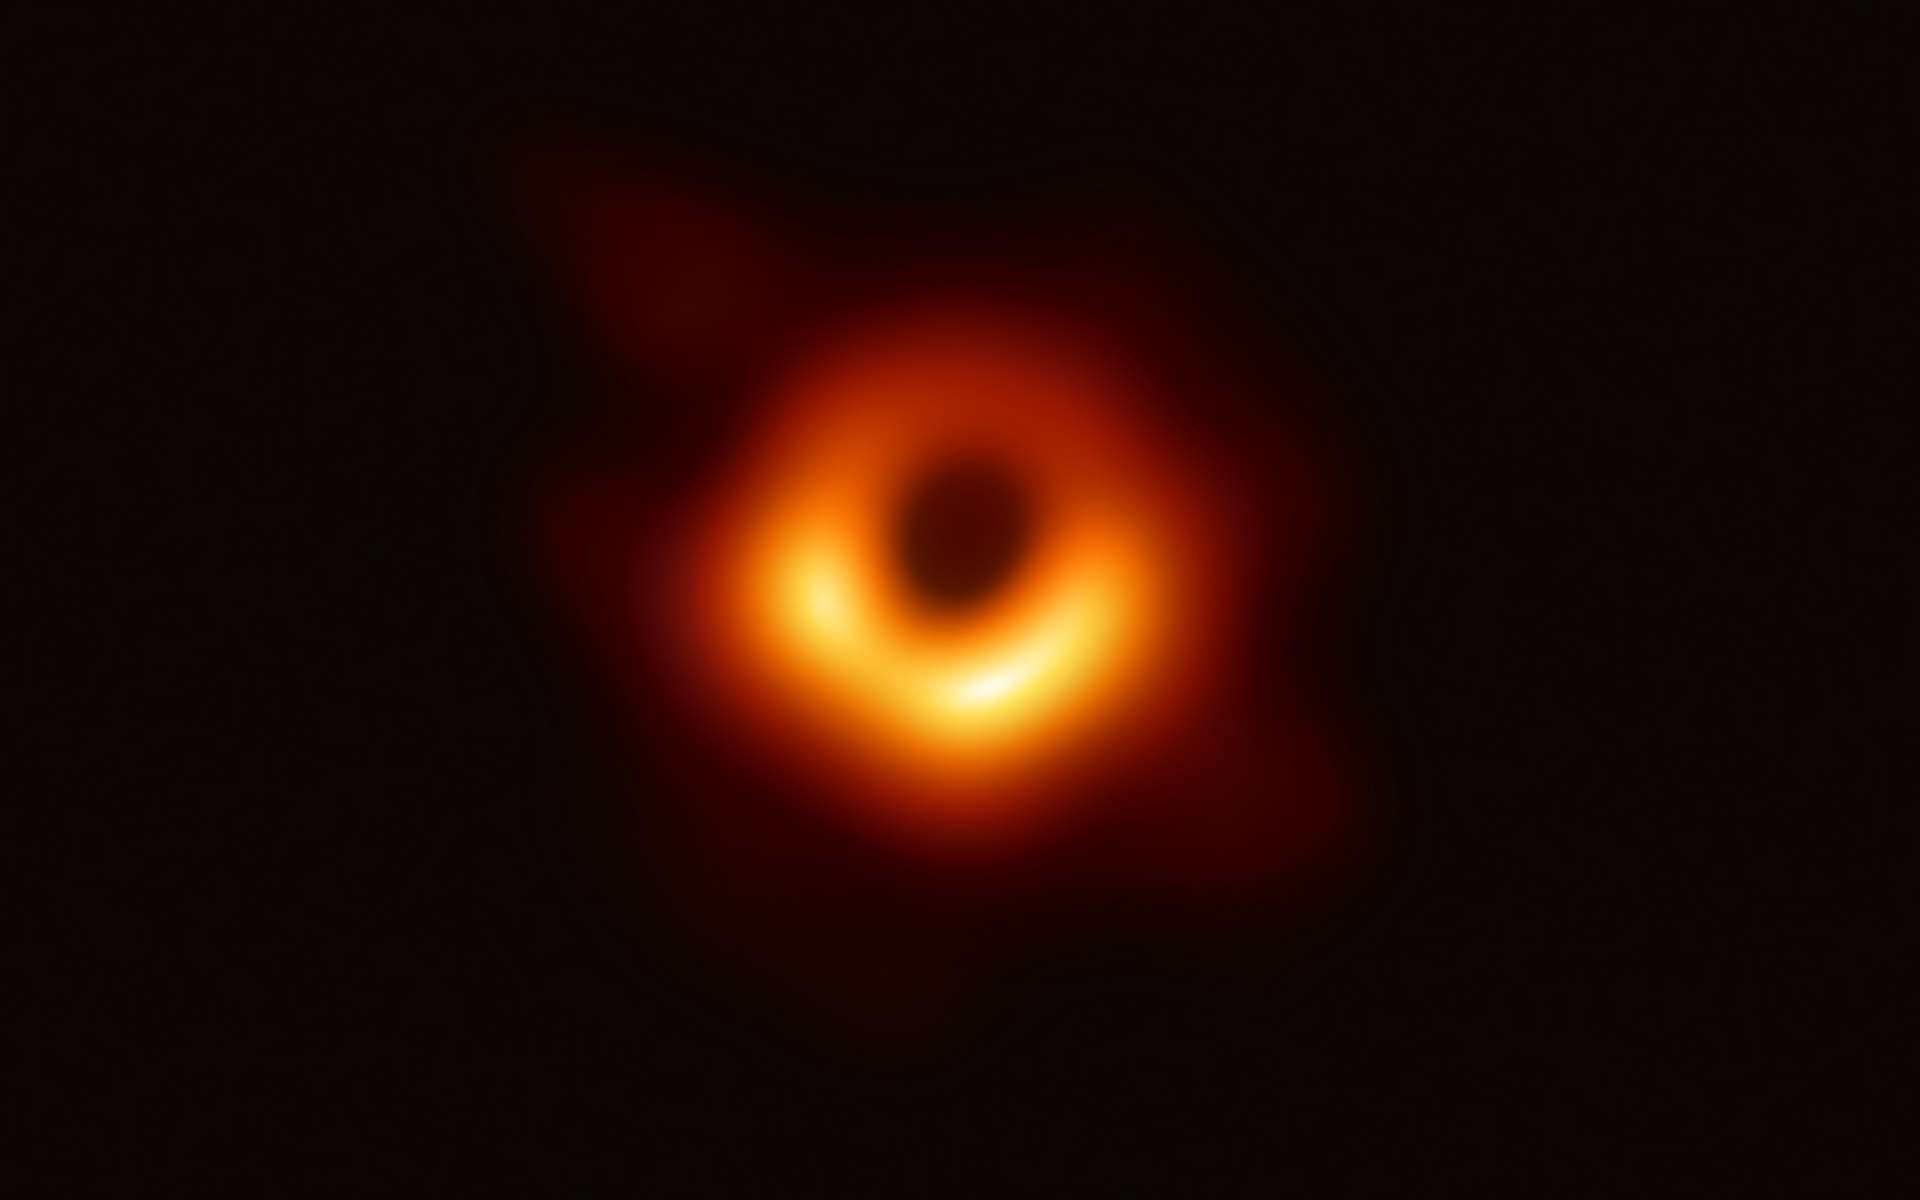 Première image d'un trou noir prise en utilisant un réseau de télescopes du projet Event Horizon Telescope. © EHT